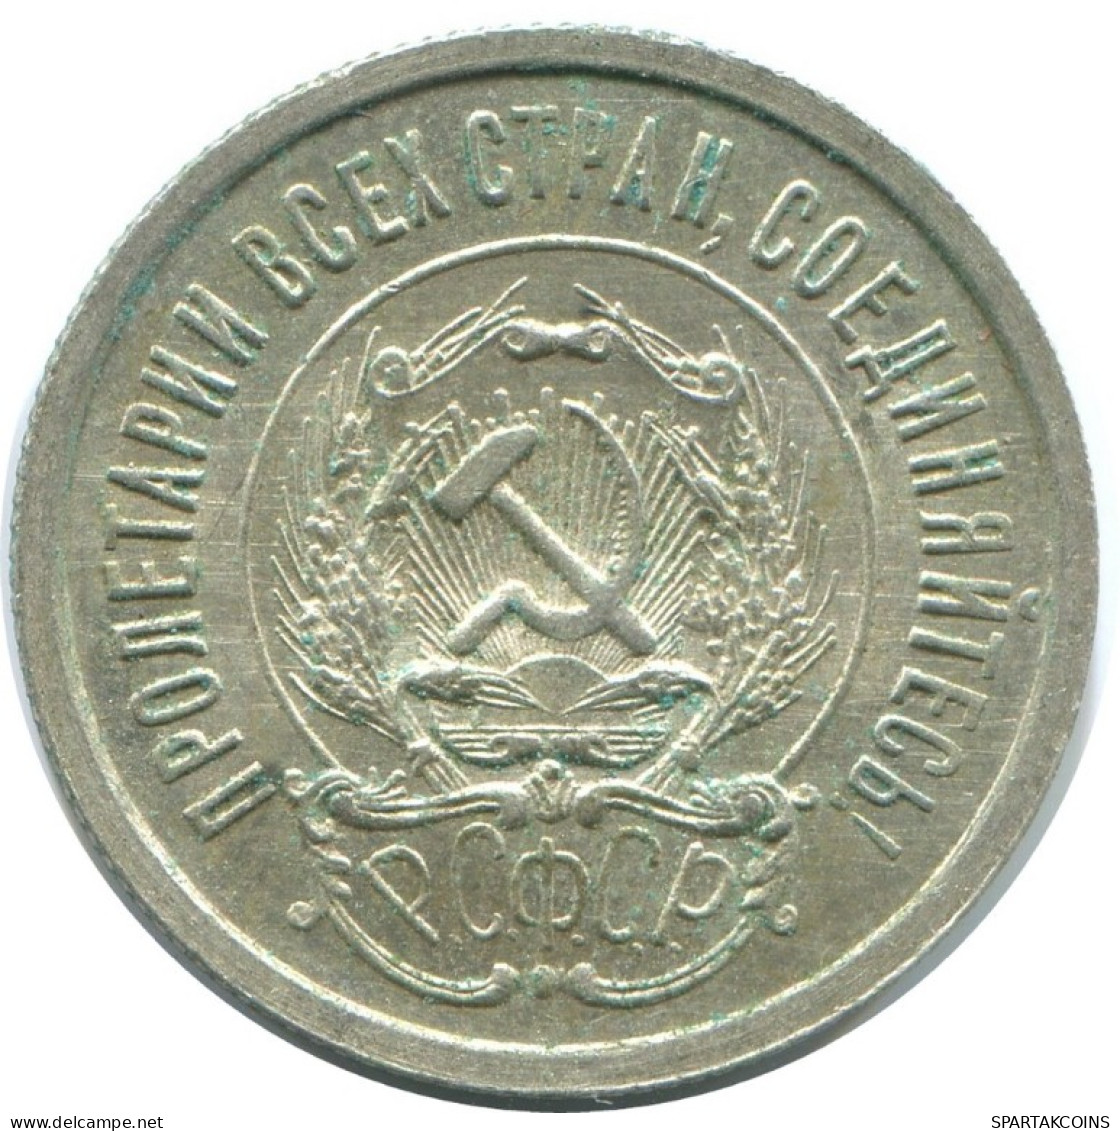 20 KOPEKS 1923 RUSSLAND RUSSIA RSFSR SILBER Münze HIGH GRADE #AF691.D.A - Russia